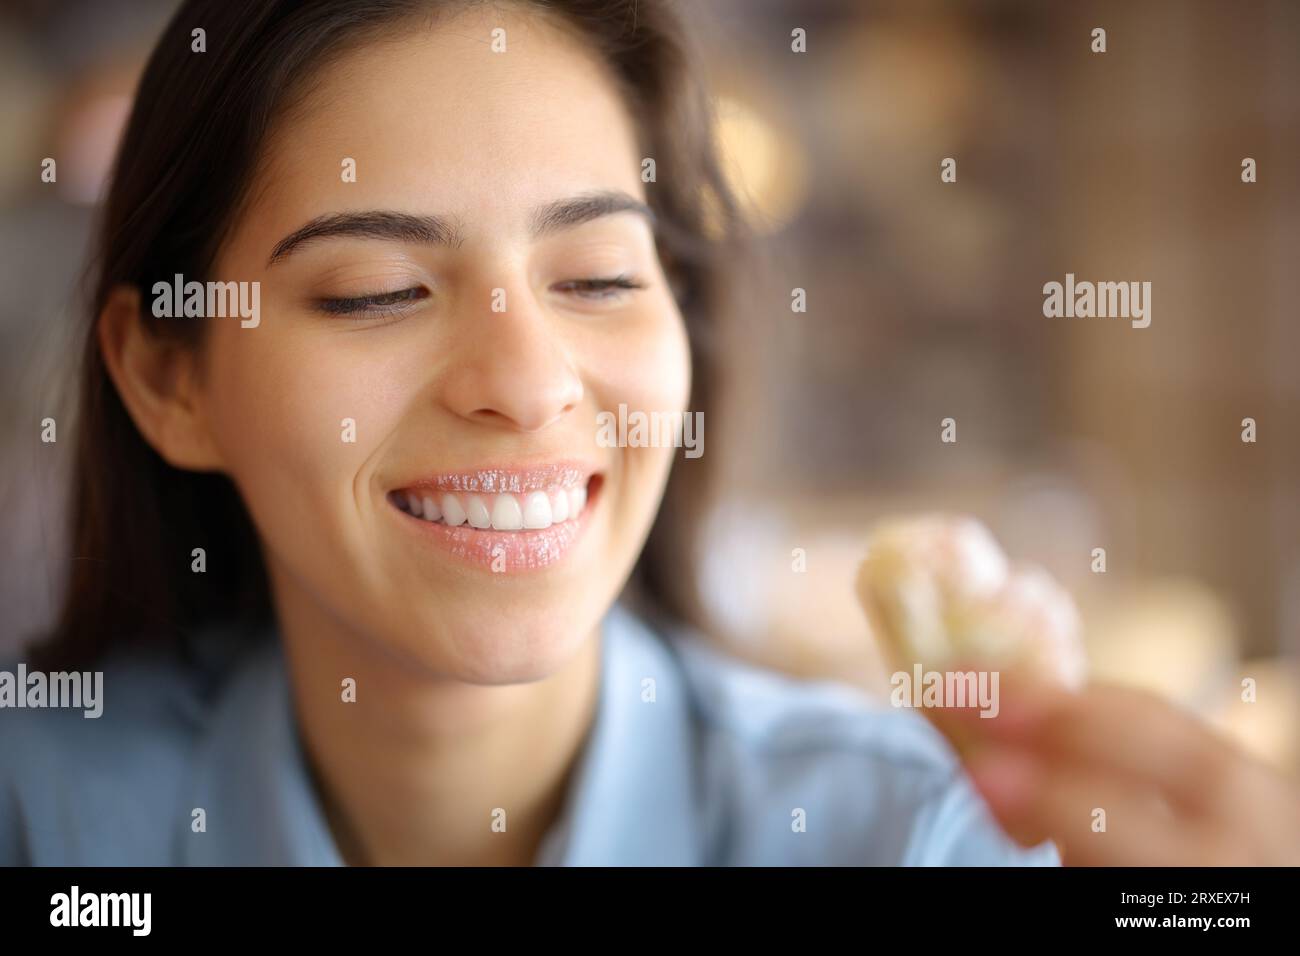 Femme heureuse mangeant un croissant sucré avec des lèvres sales dans un restaurant Banque D'Images